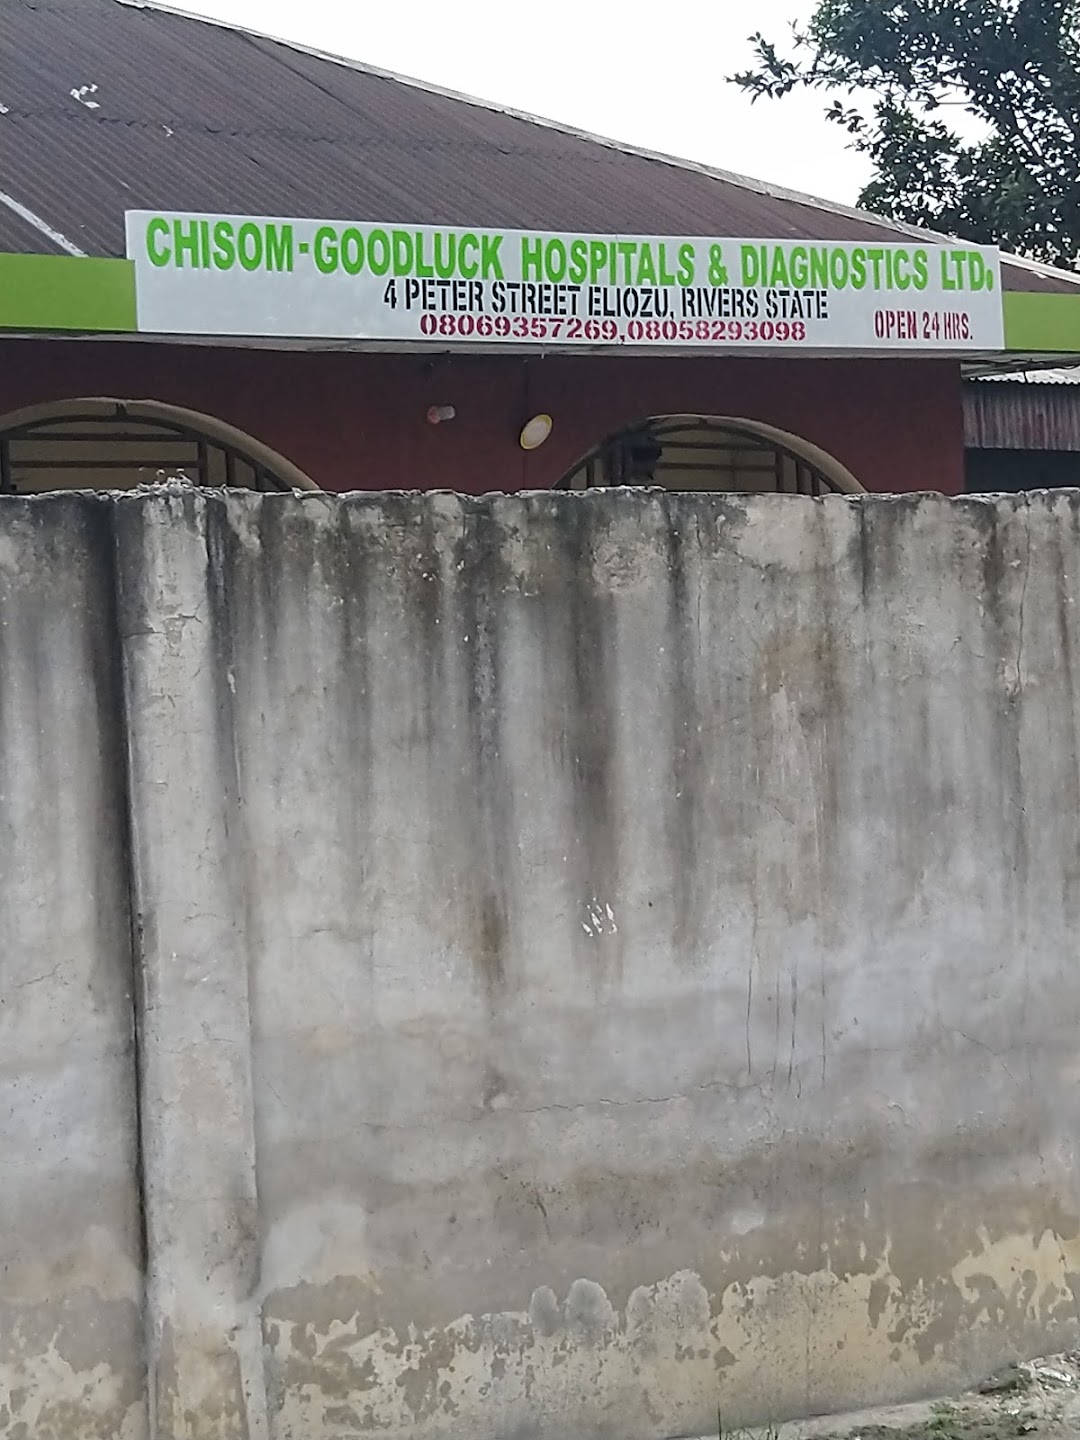 Chisom-Goodluck Hospitals & Diagnostics